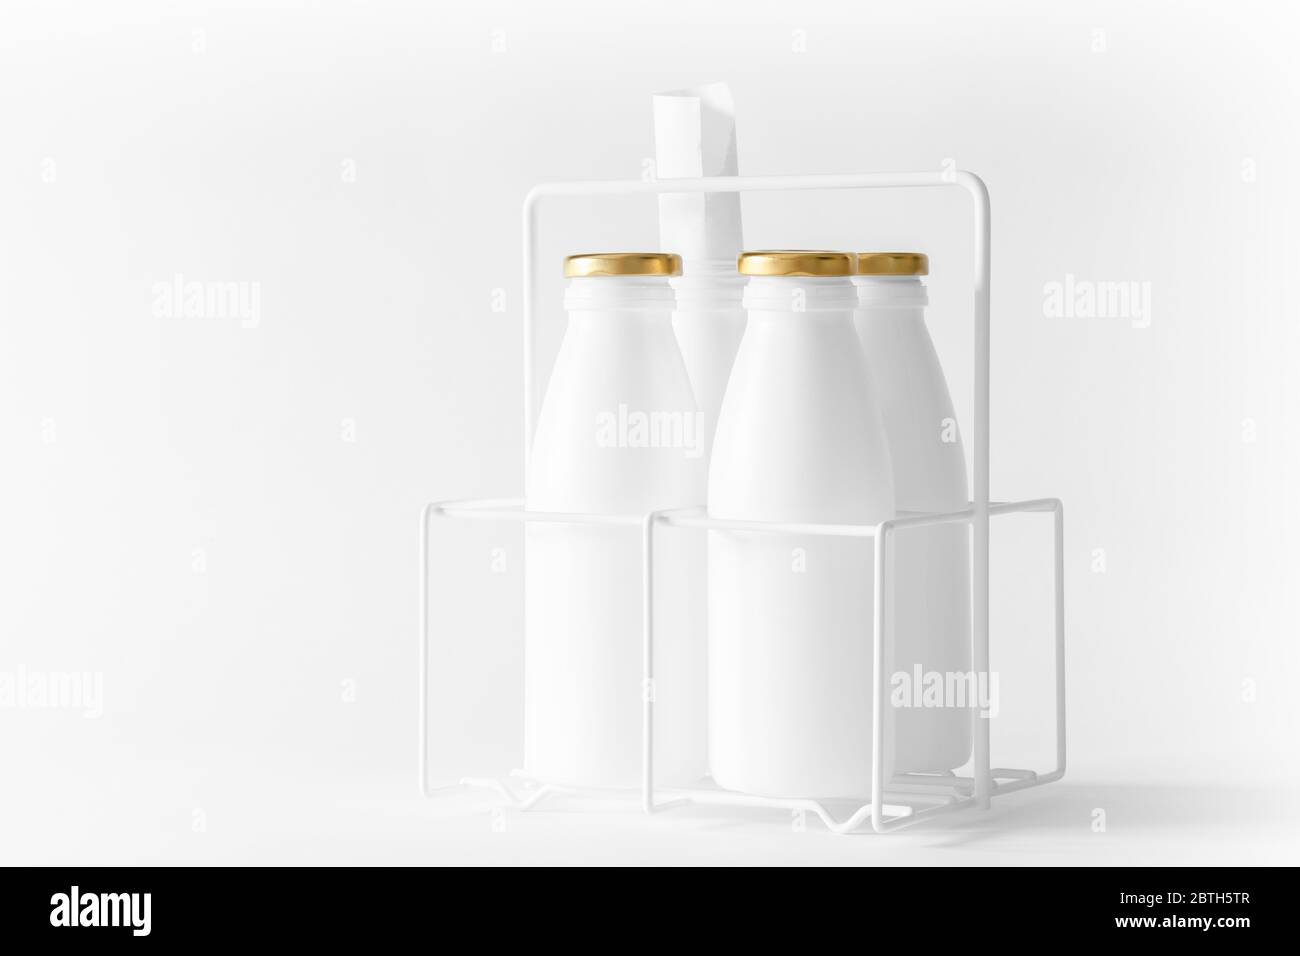 High-Key, weißes Artwork Bild von gebrauchten Flaschen. Stillleben Schwarz-Weiß-Kunst von recycelten Abfallobjekten als vorgetäuschte Milchbehälter dargestellt Stockfoto